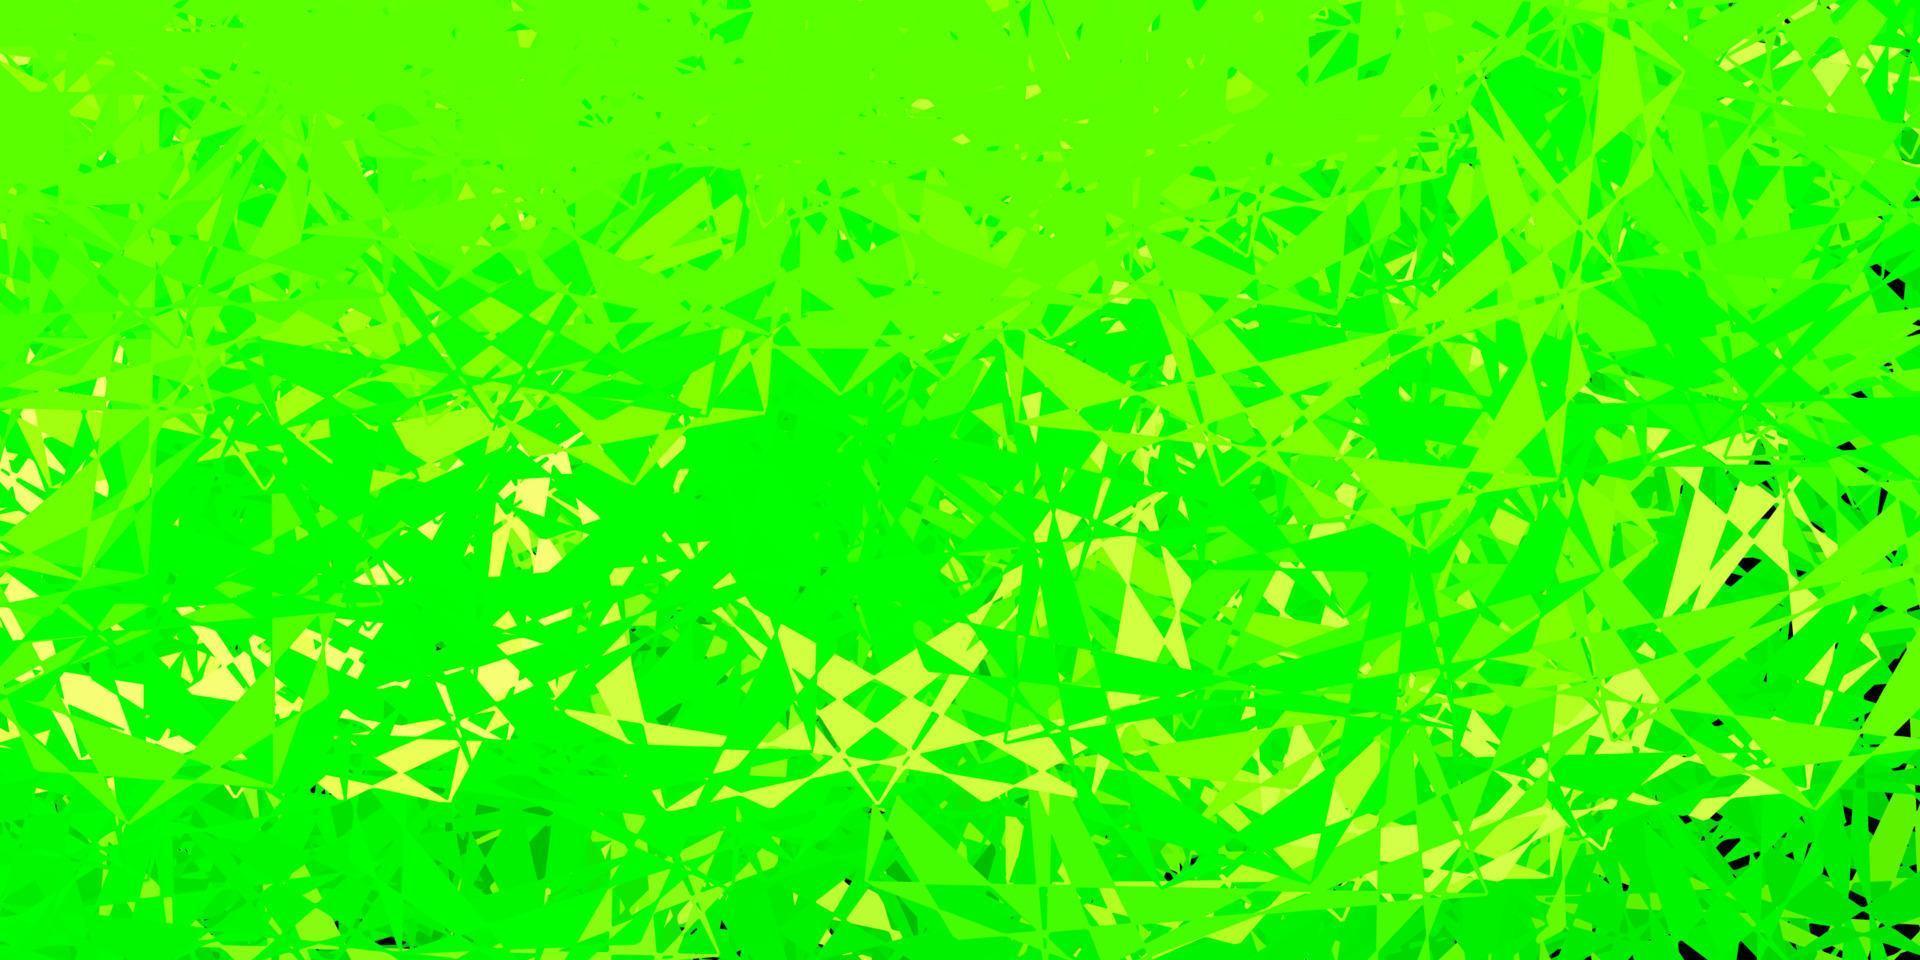 modello vettoriale verde chiaro, giallo con forme triangolari.